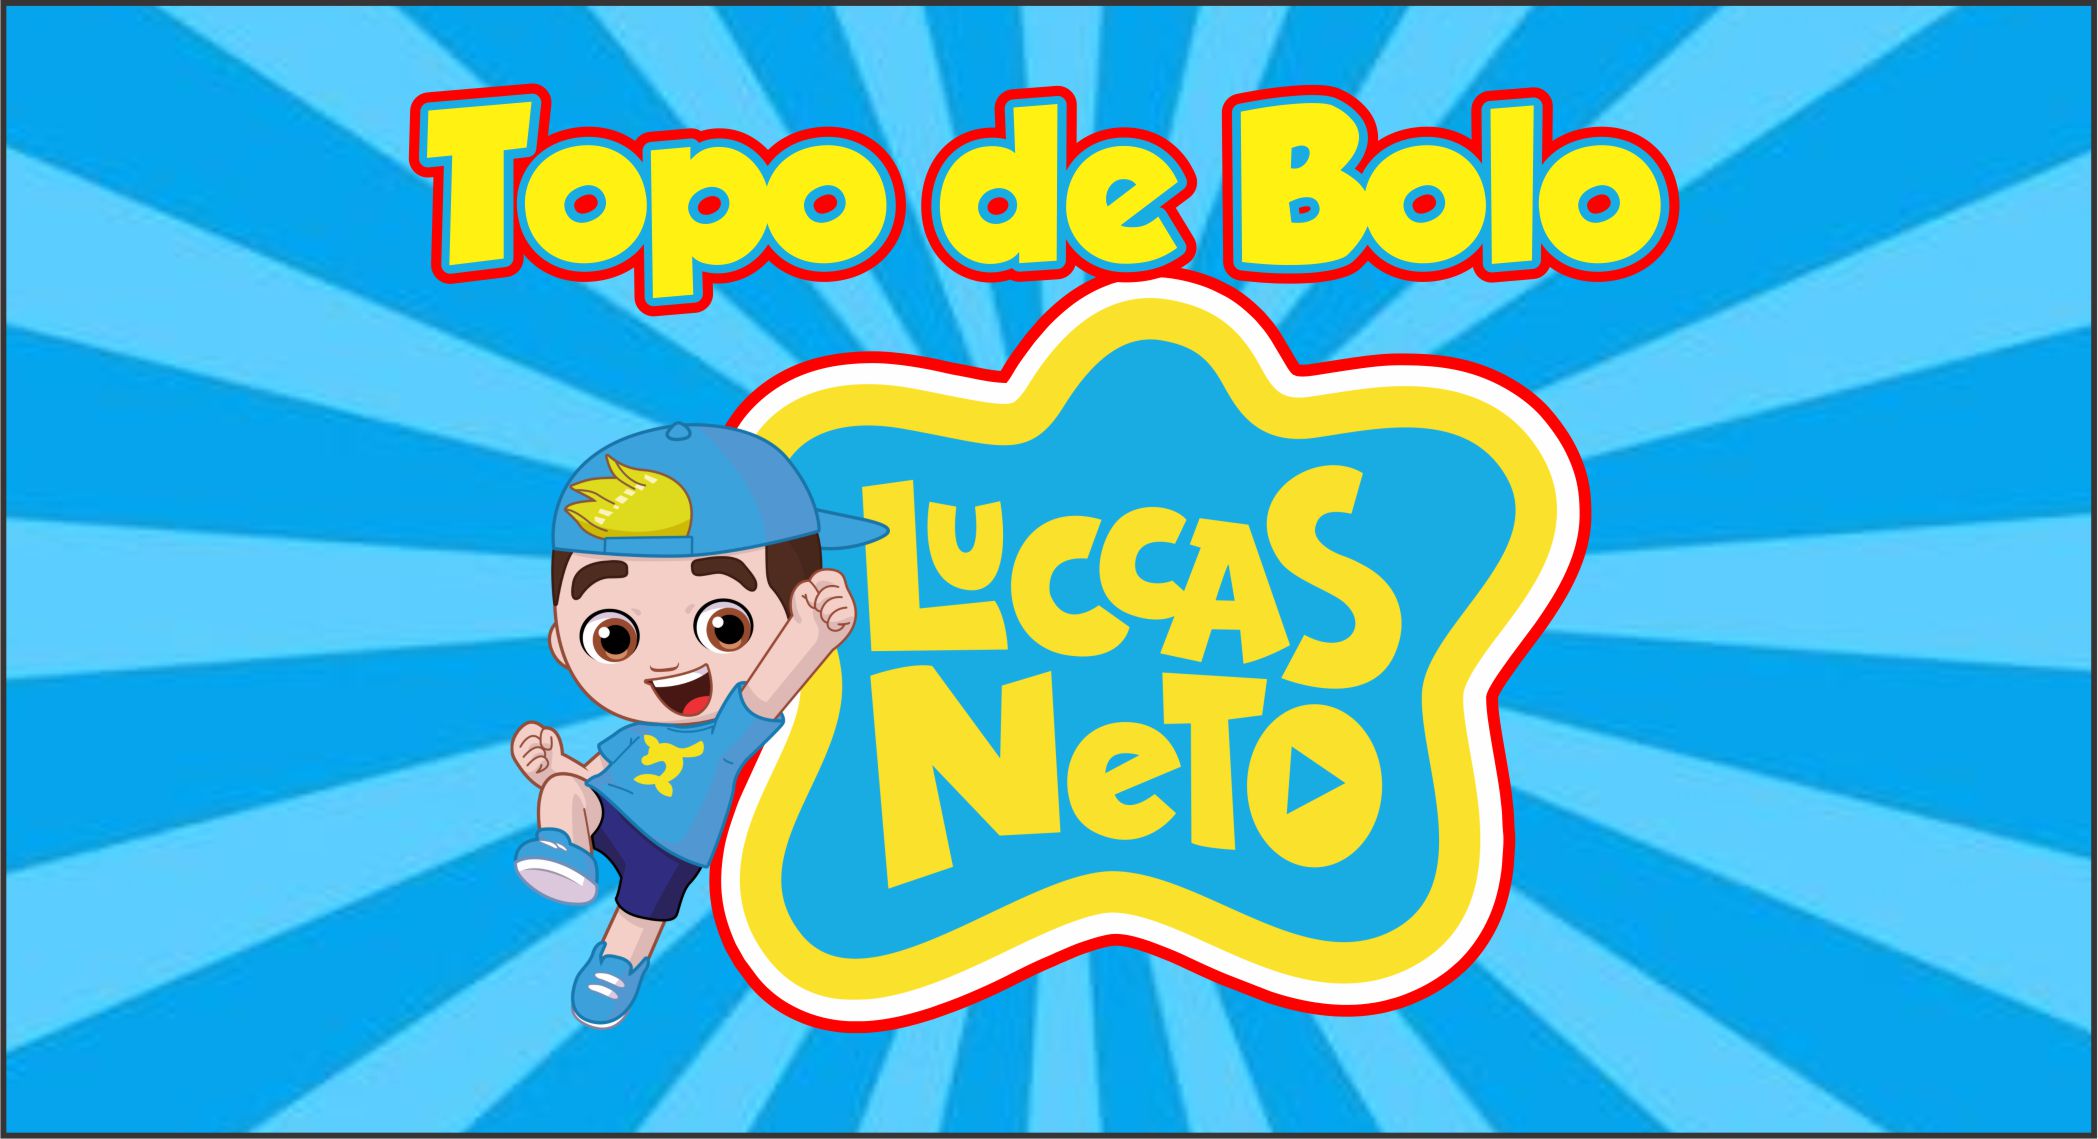 Topo de Bolo luccas neto - Edite grátis com nosso editor online